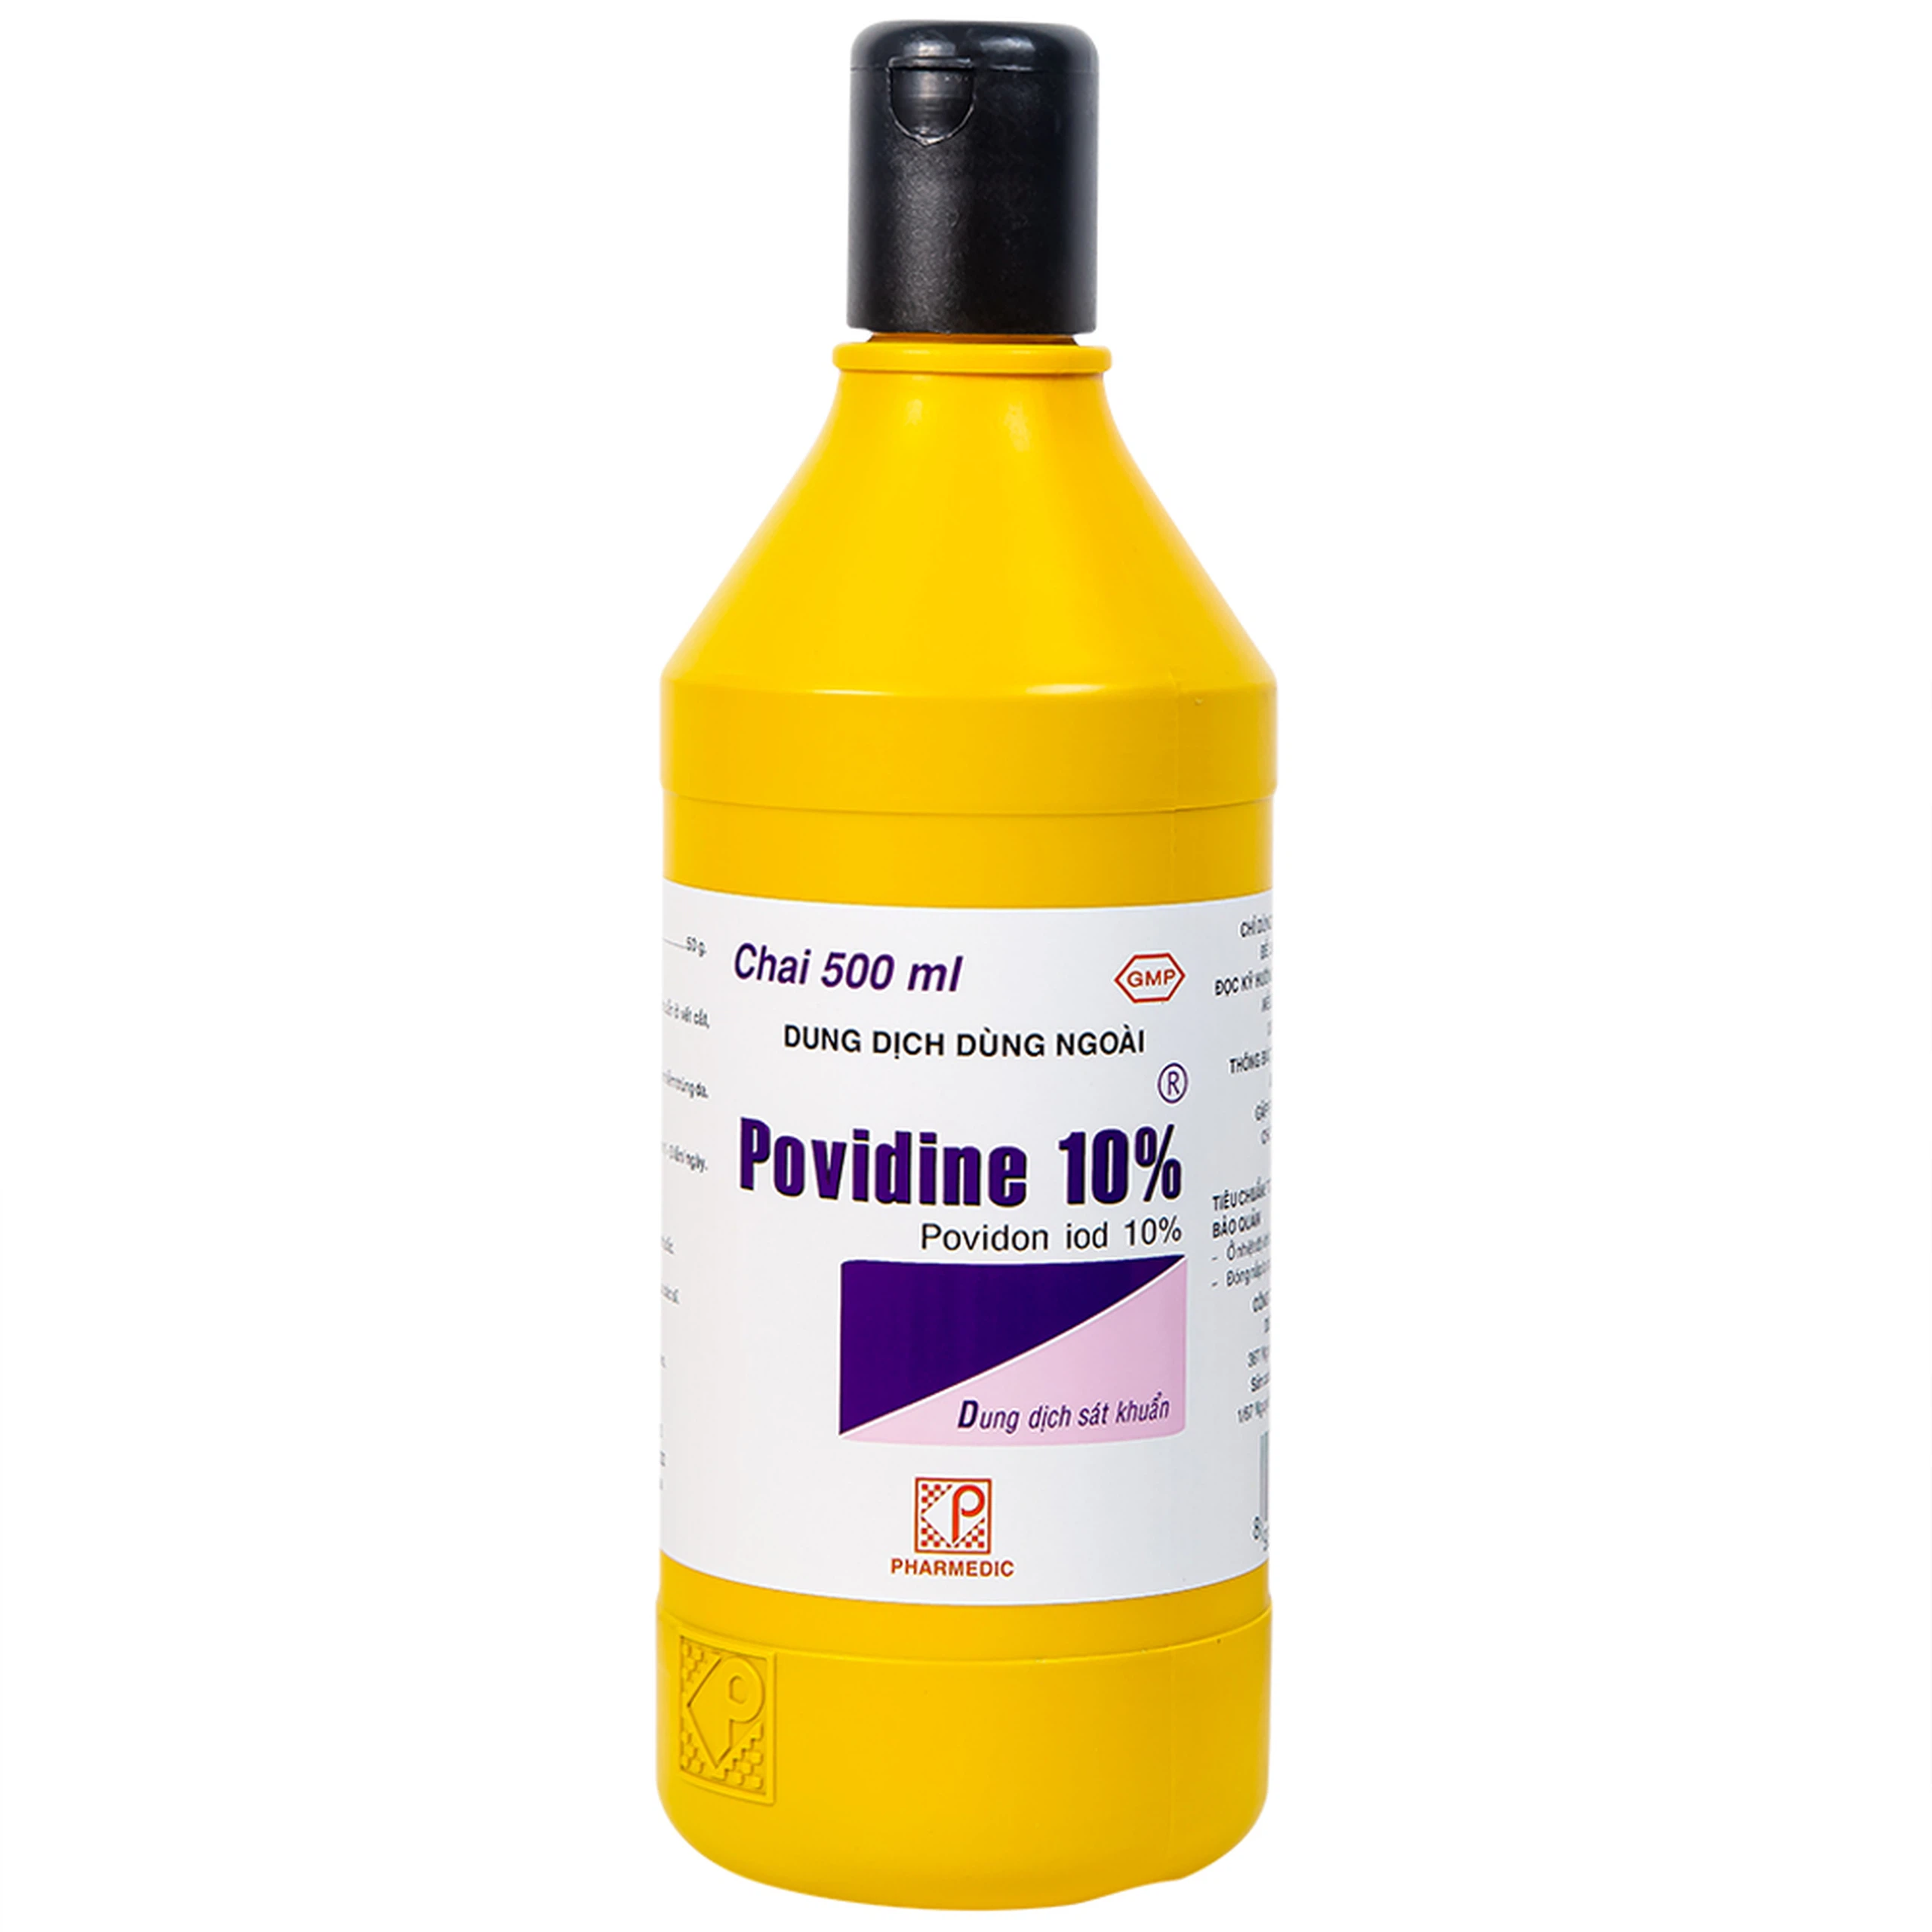 Dung dịch sát khuẩn Povidine 10% Pharmedic ngăn ngừa nhiễm khuẩn ở vết cắt, vết trầy (500ml)